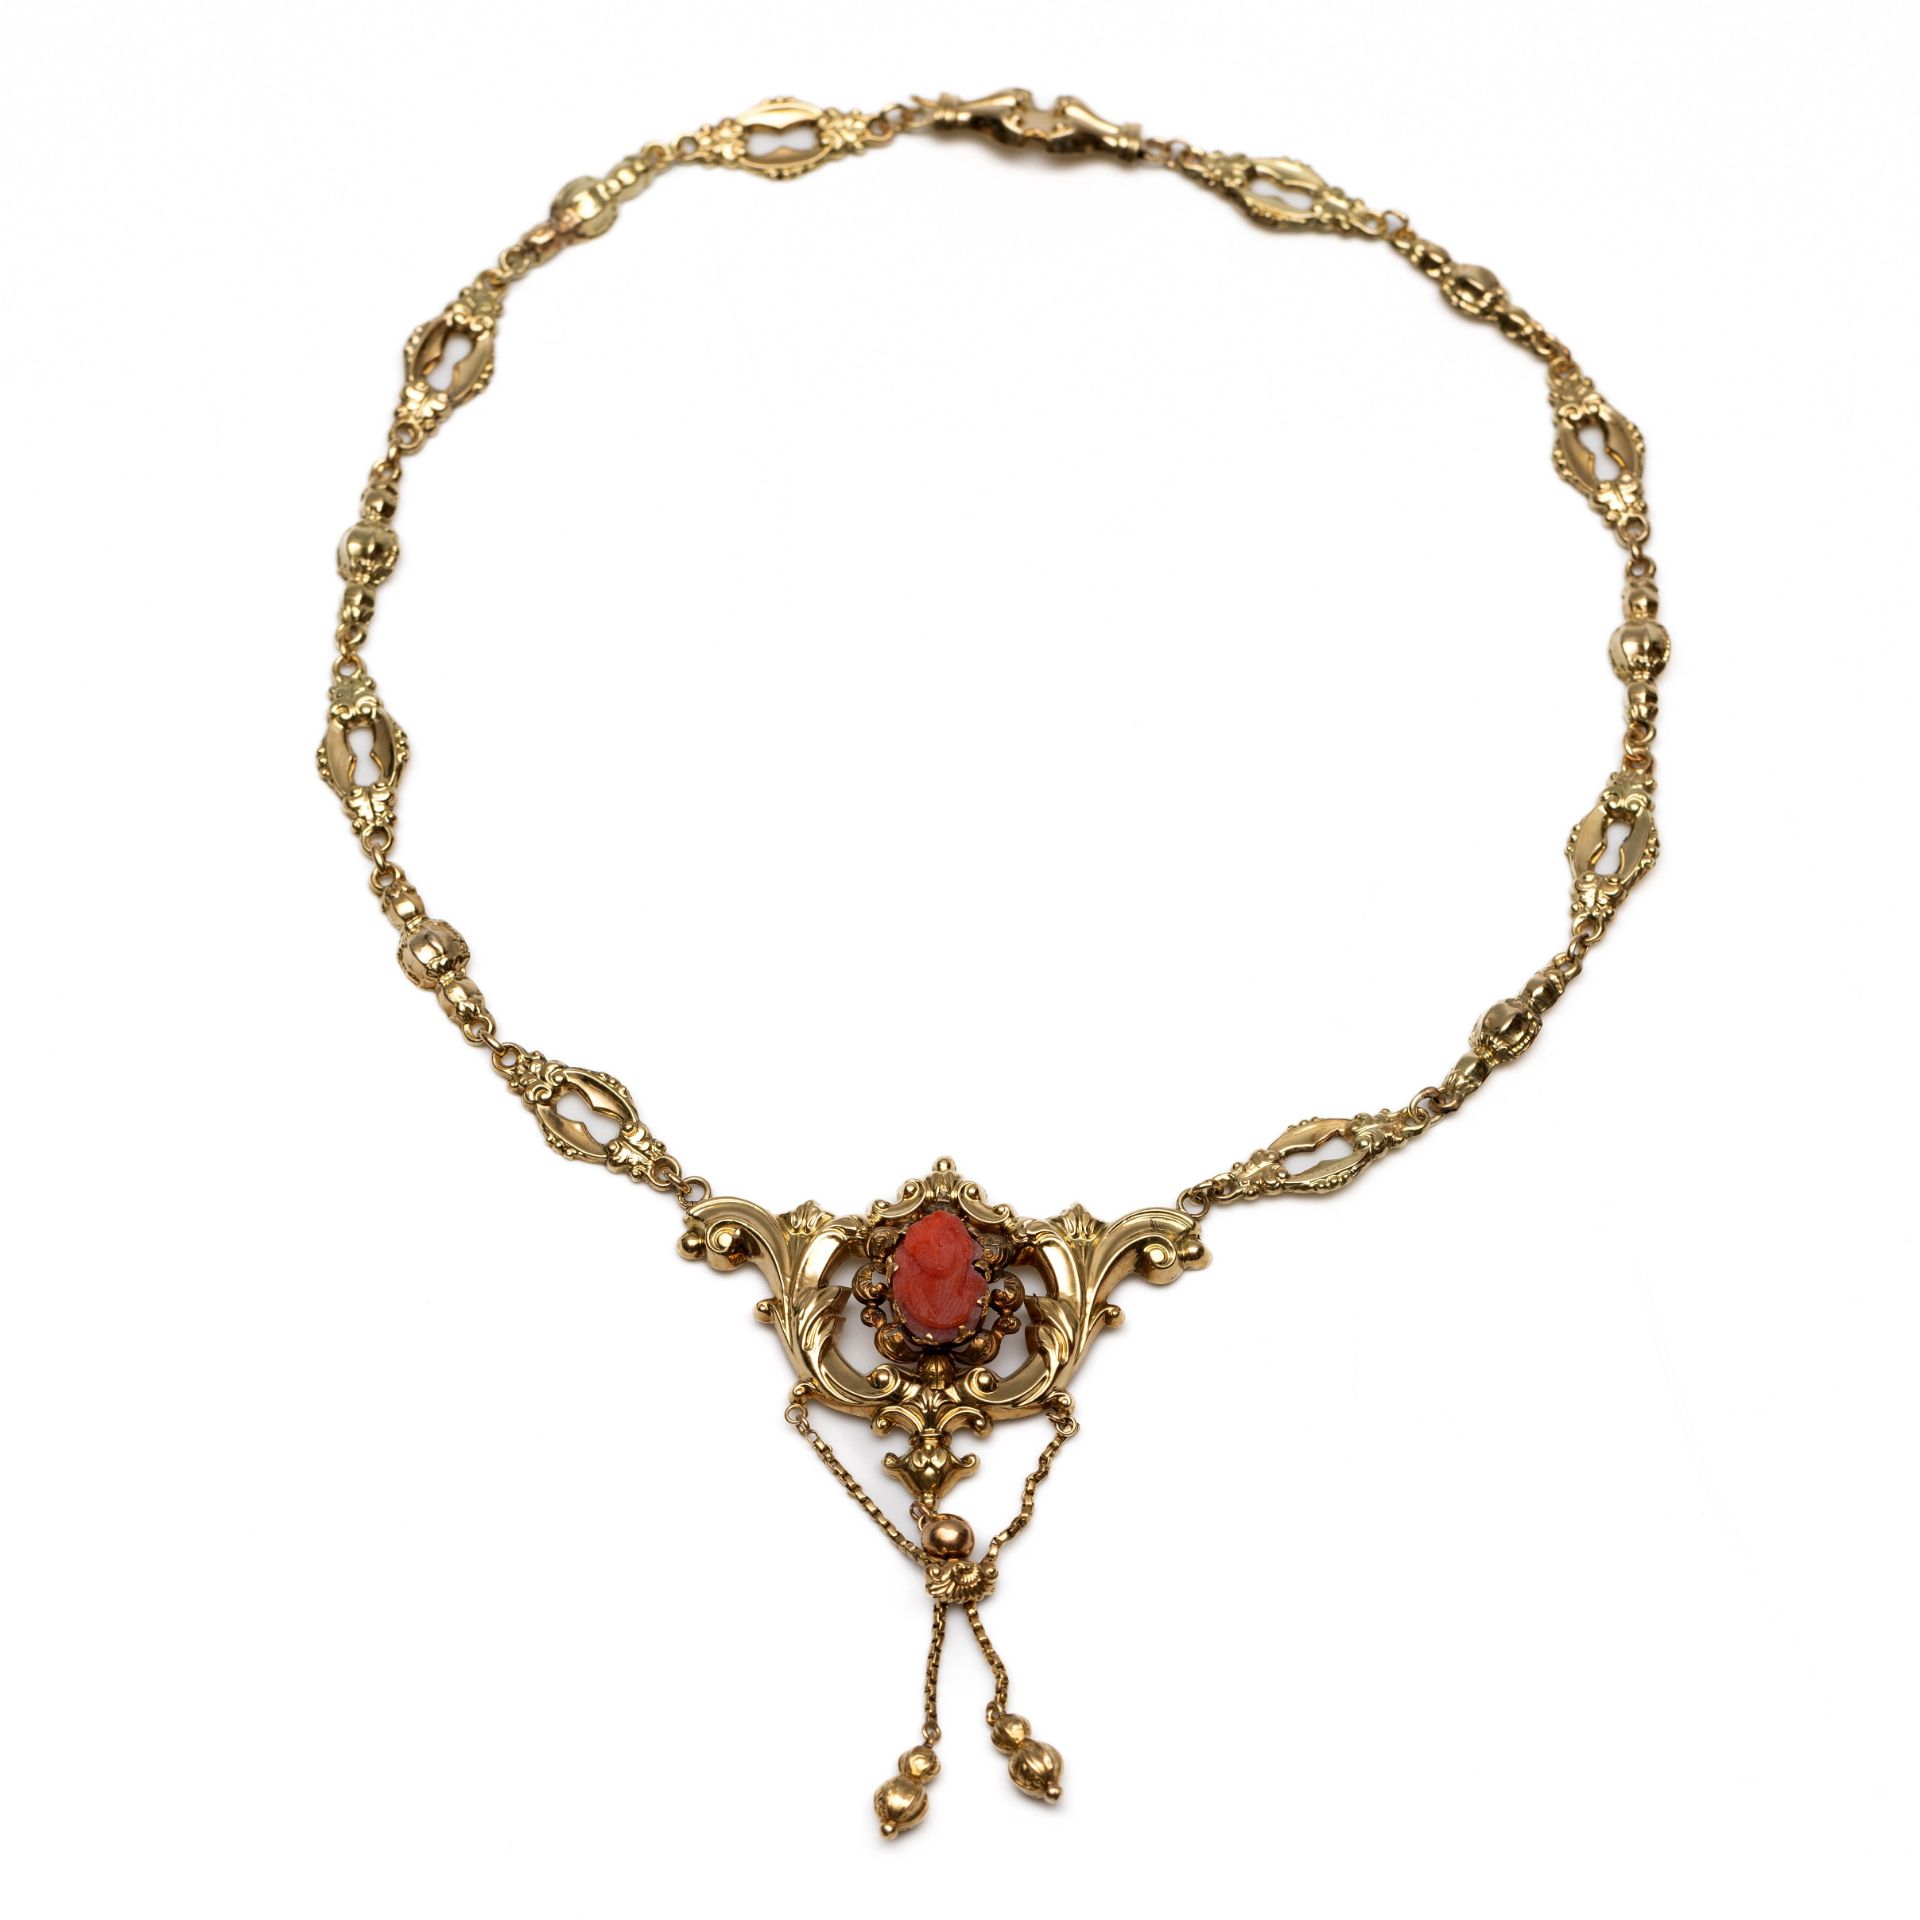 Beneden wettelijk gehalte gouden repoussé collier, 19e eeuw.